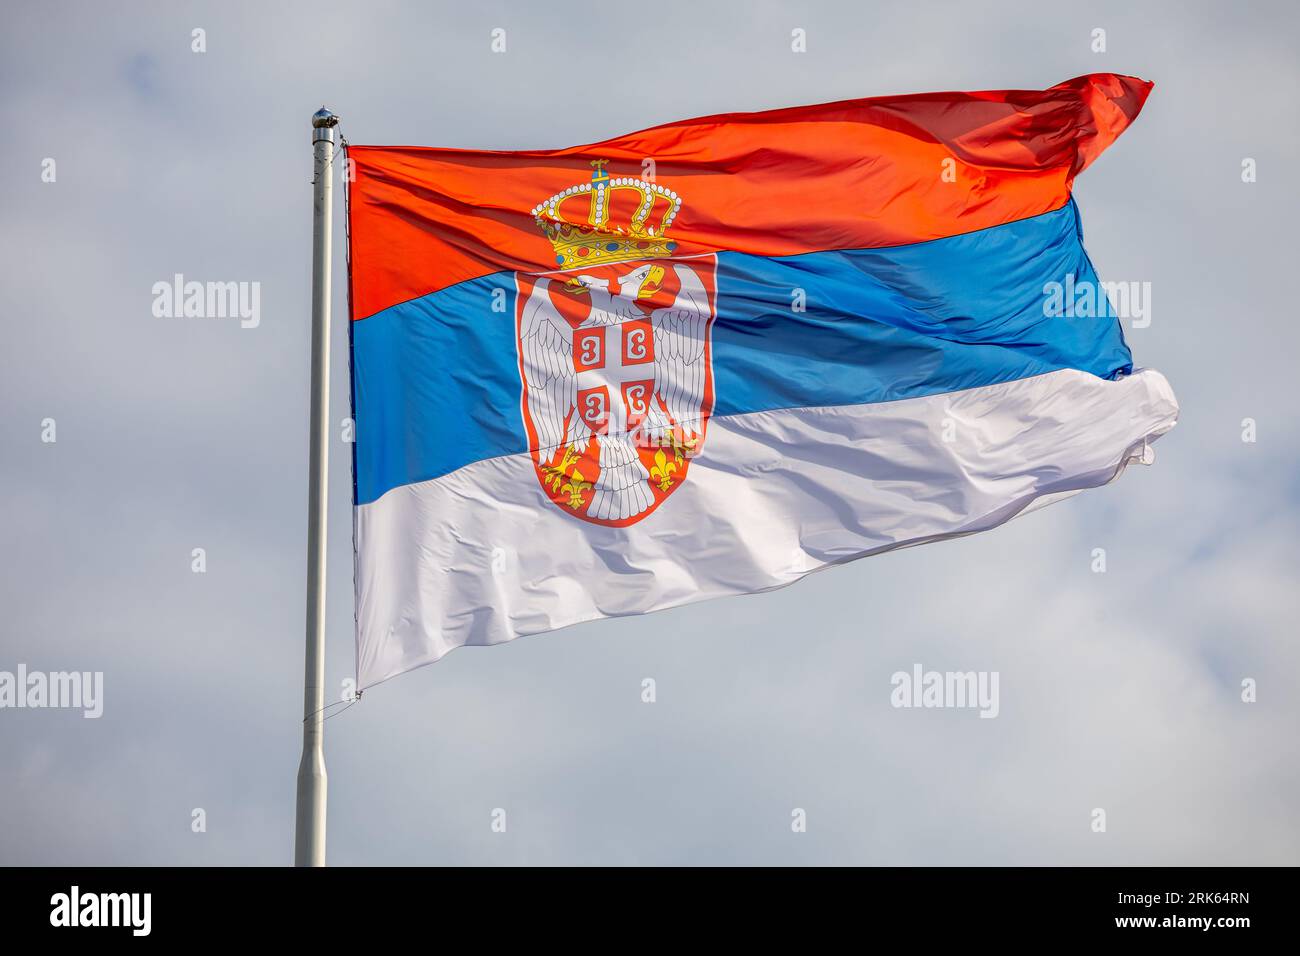 Drapeau national serbe sur vent, extérieur, fond nuageux Banque D'Images